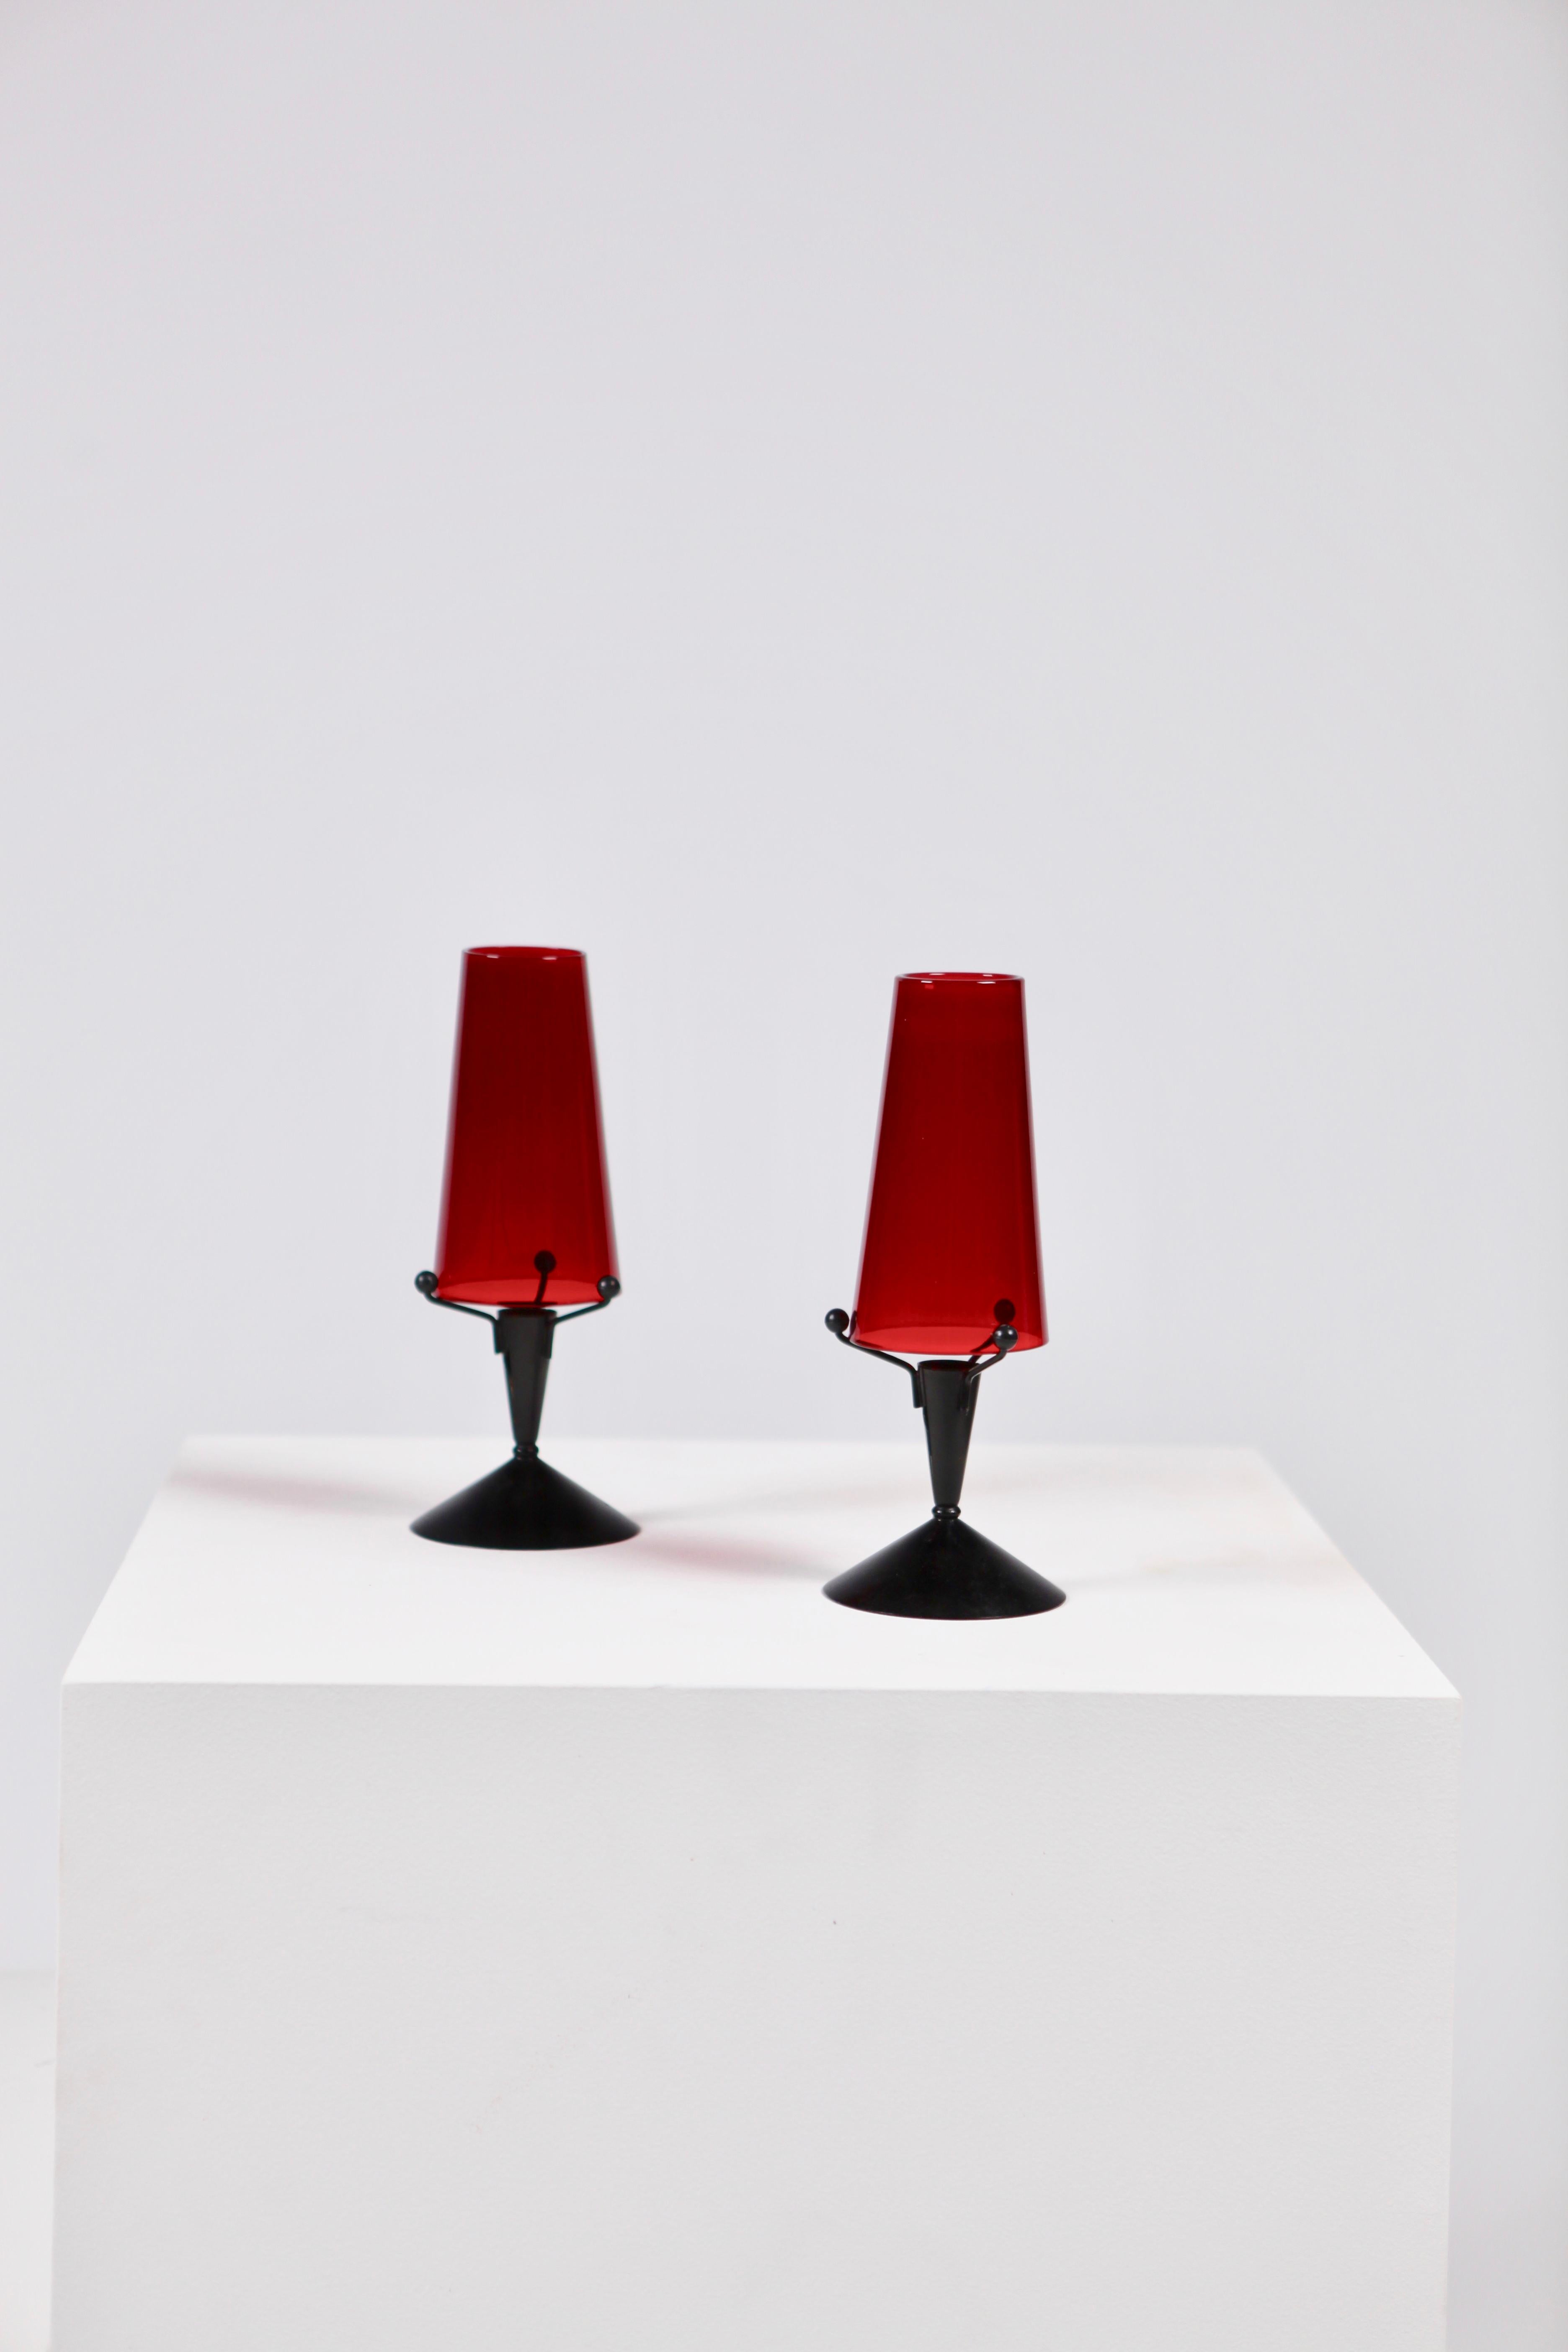 Ein Paar Kerzenständer aus schwarzem Metall und rotem Glas von Gunnar Ander für Ystad Metal, Schweden.
Sehr guter Vintage-Zustand, keine Chips, etc.